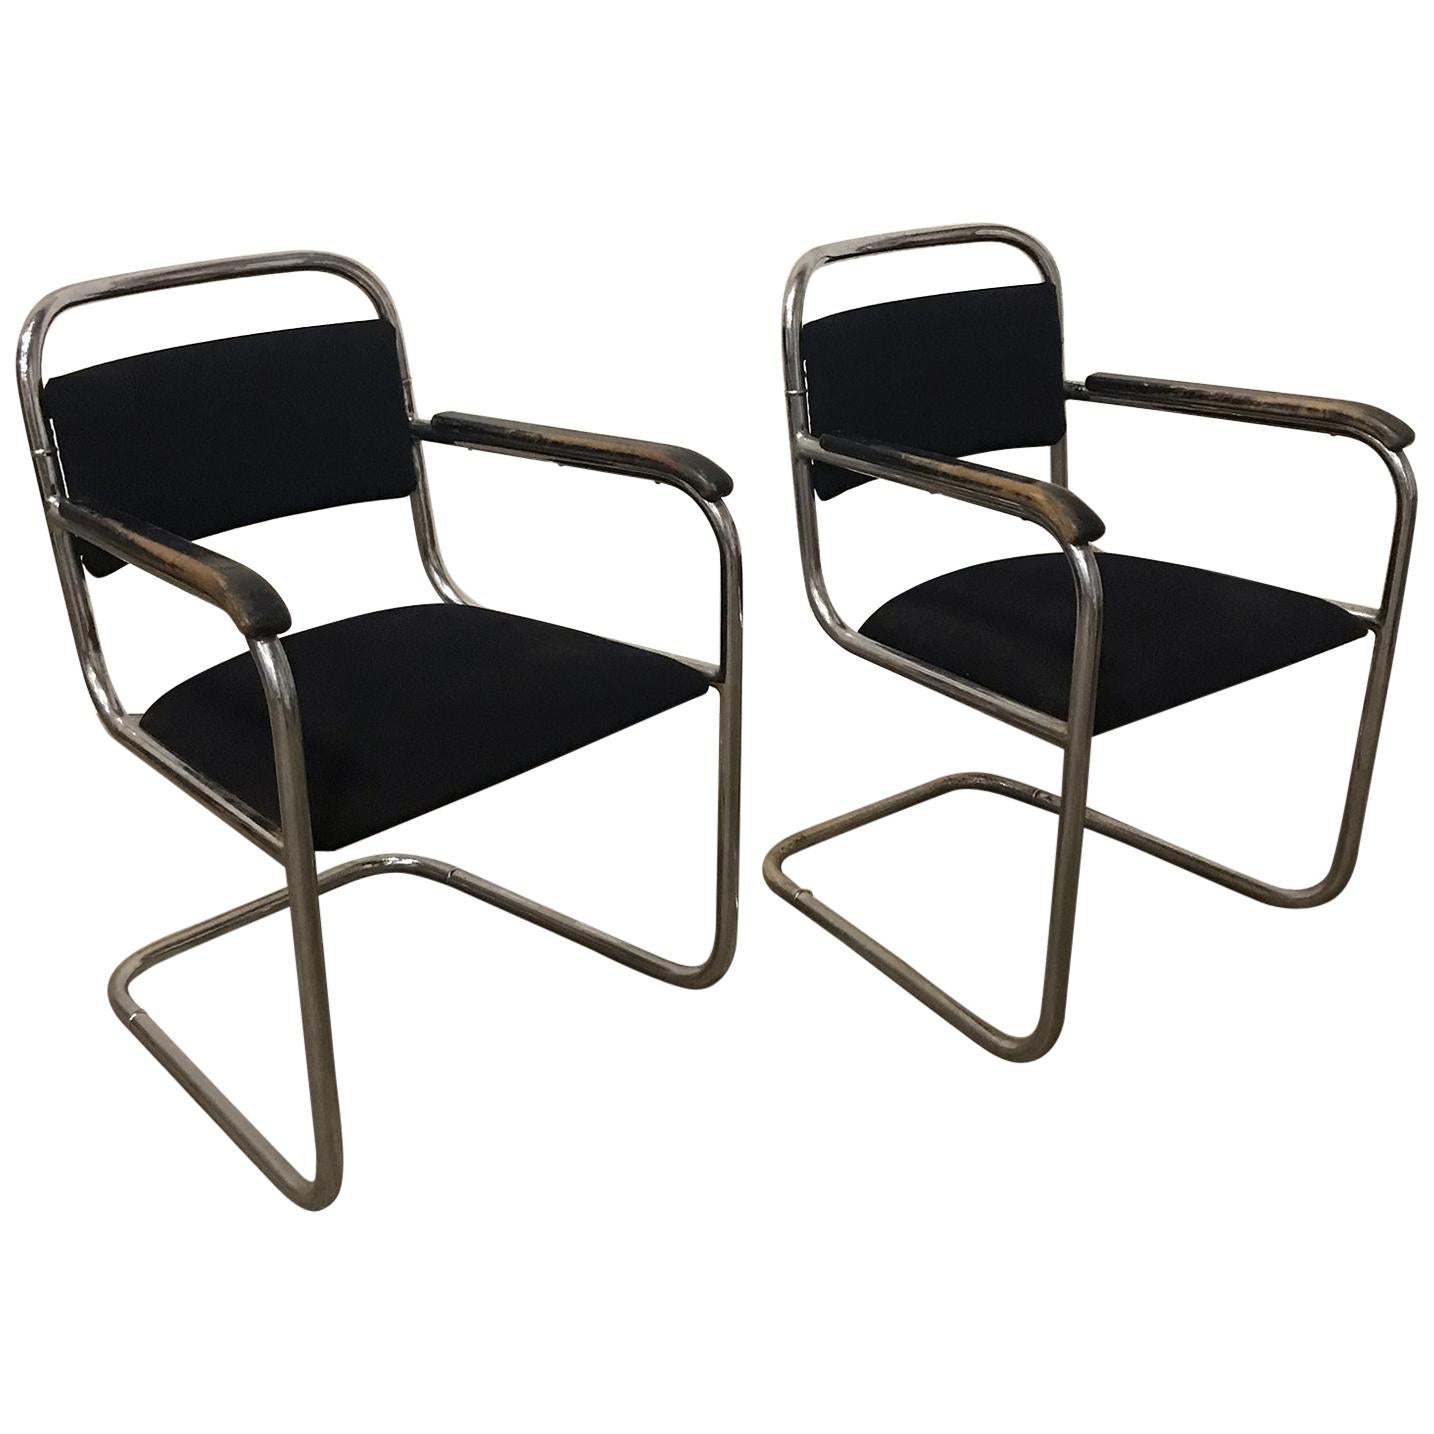 Design néerlandais, ensemble de chaises tubulaires originales avec tapisserie noire, vers 1930